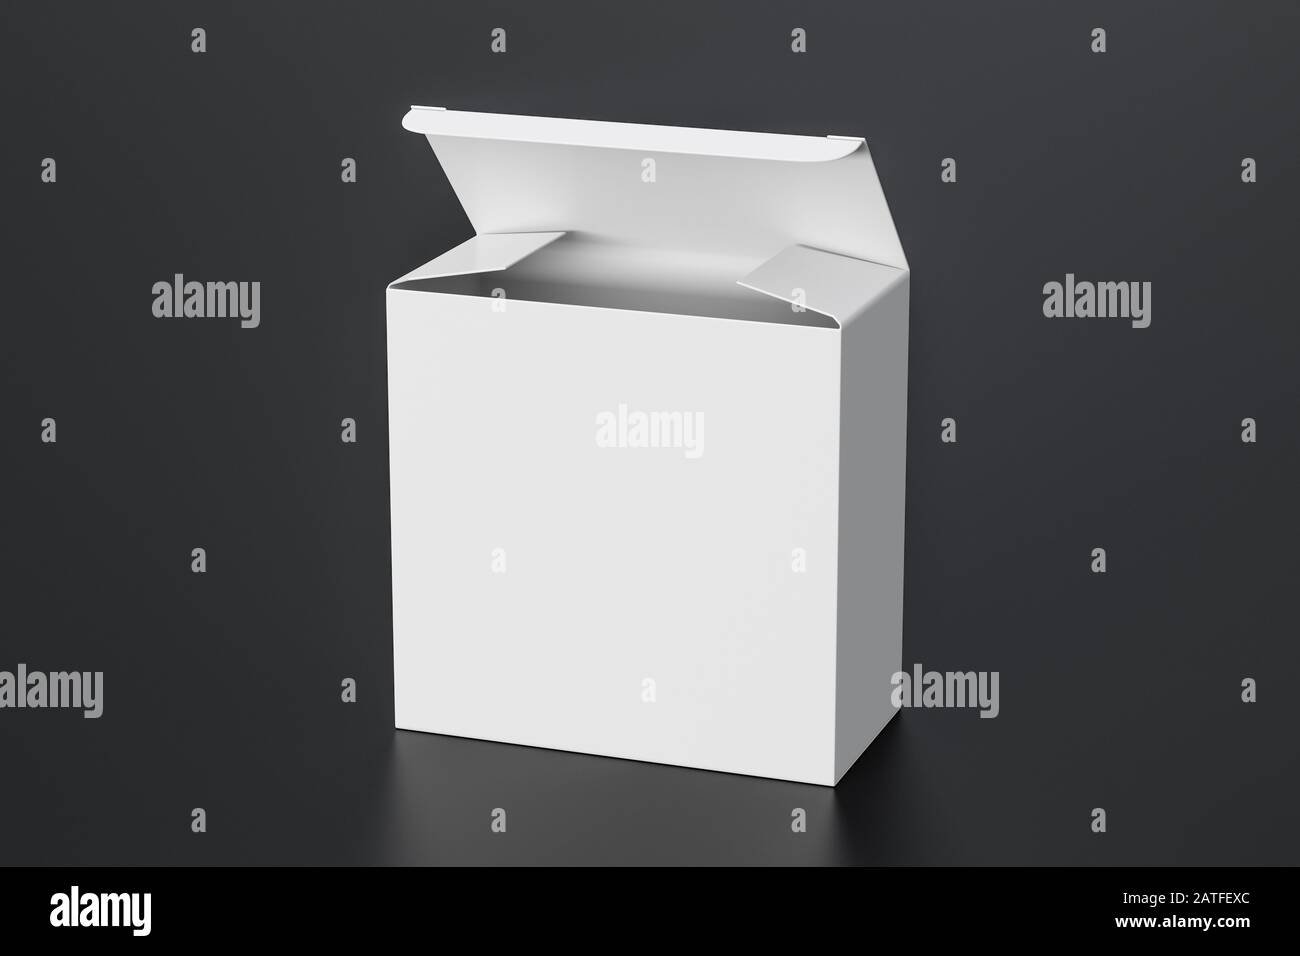 Boîte carrée large blanche vierge avec couvercle à rabat ouvert sur fond noir. Chemin de détourage autour de la maquette de boîte Banque D'Images